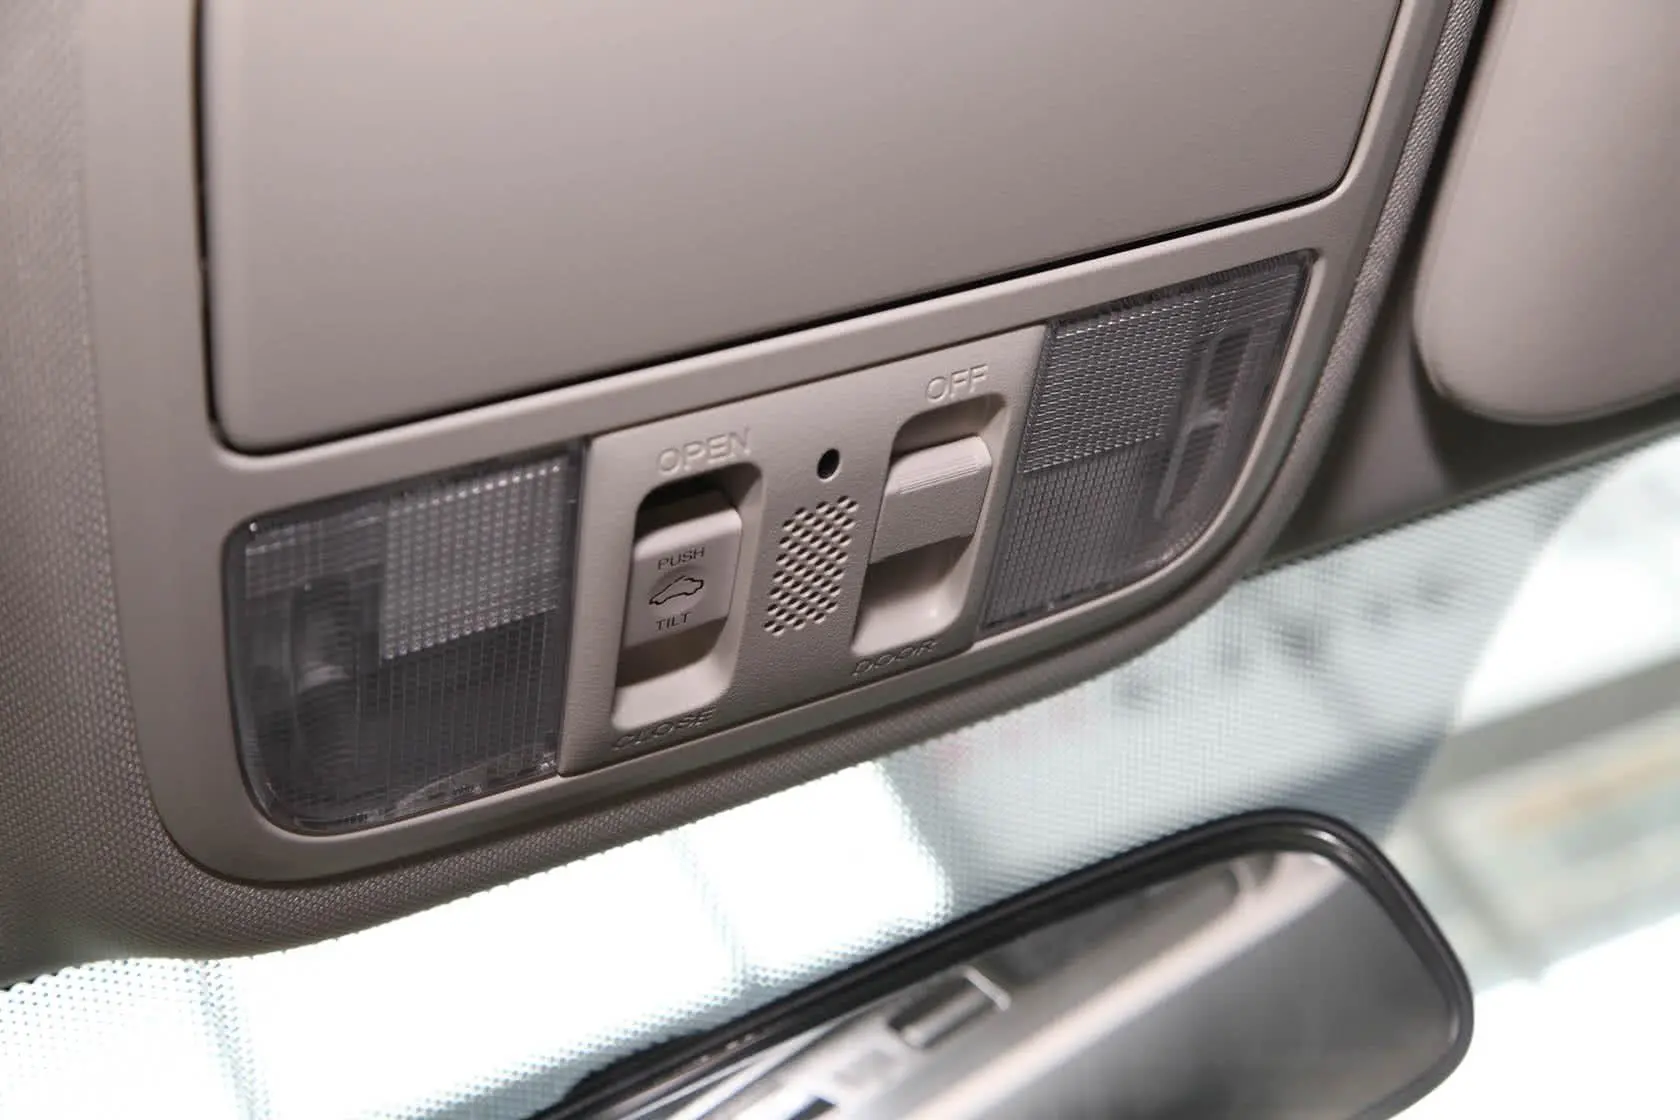 本田CR-V2.4L 四驱 豪华版前排车顶中央控制区